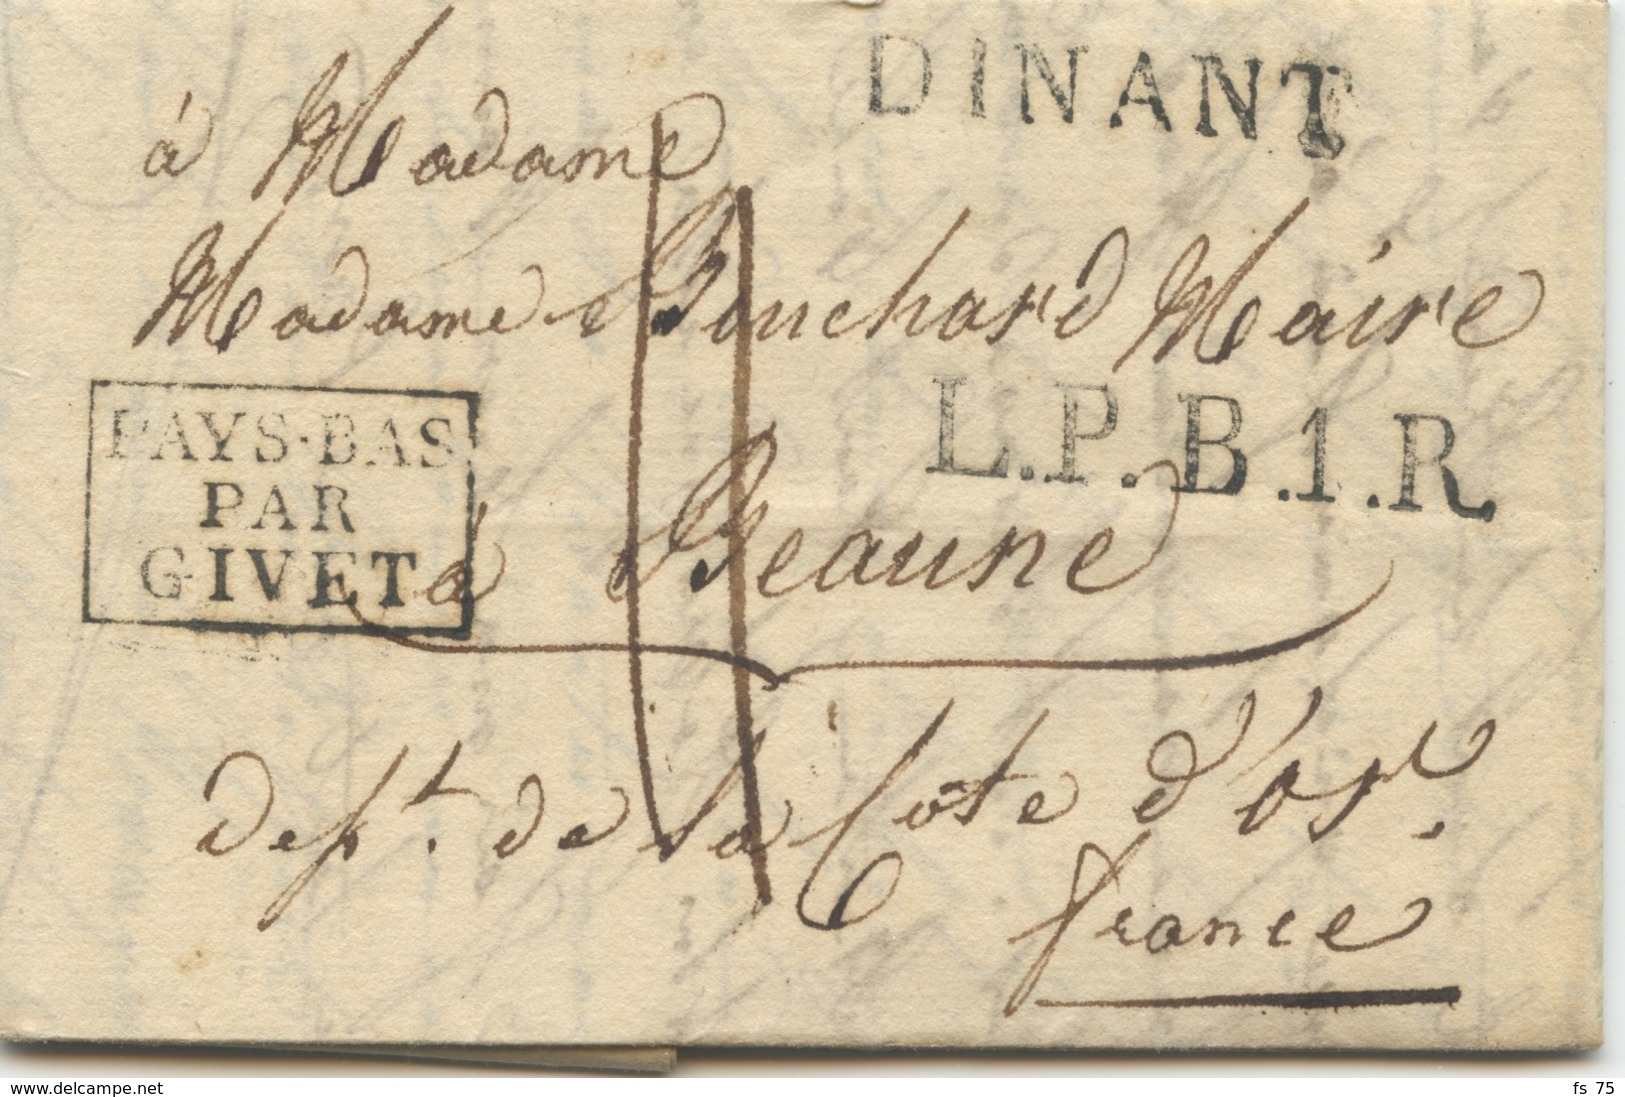 BELGIQUE - DINANT + L.P.B.1.R. + PAYS BAS PAR GIVET SUR LETTRE AVEC TEXTE POUR LA FRANCE, 1818 - 1815-1830 (Période Hollandaise)